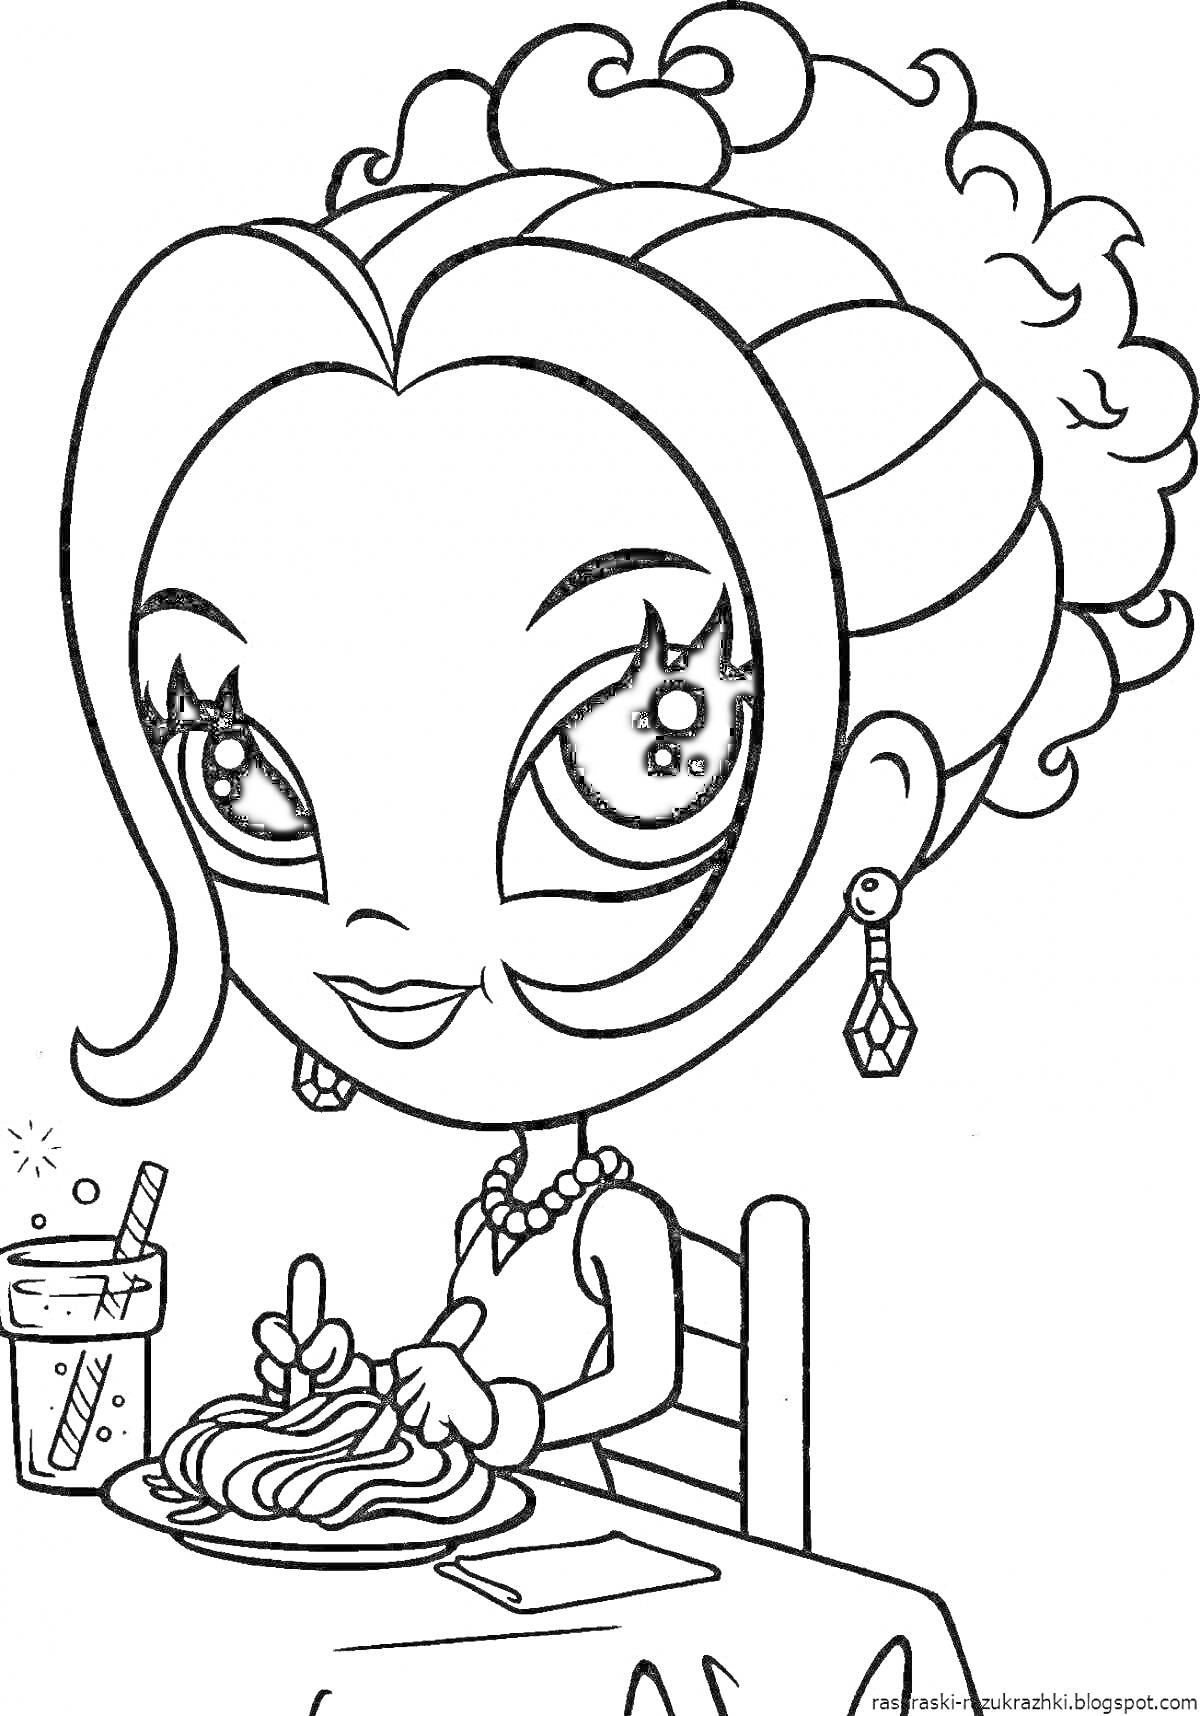 Раскраска Девочка с большими глазами, сидящая за столом, с тарелкой спагетти и стаканом